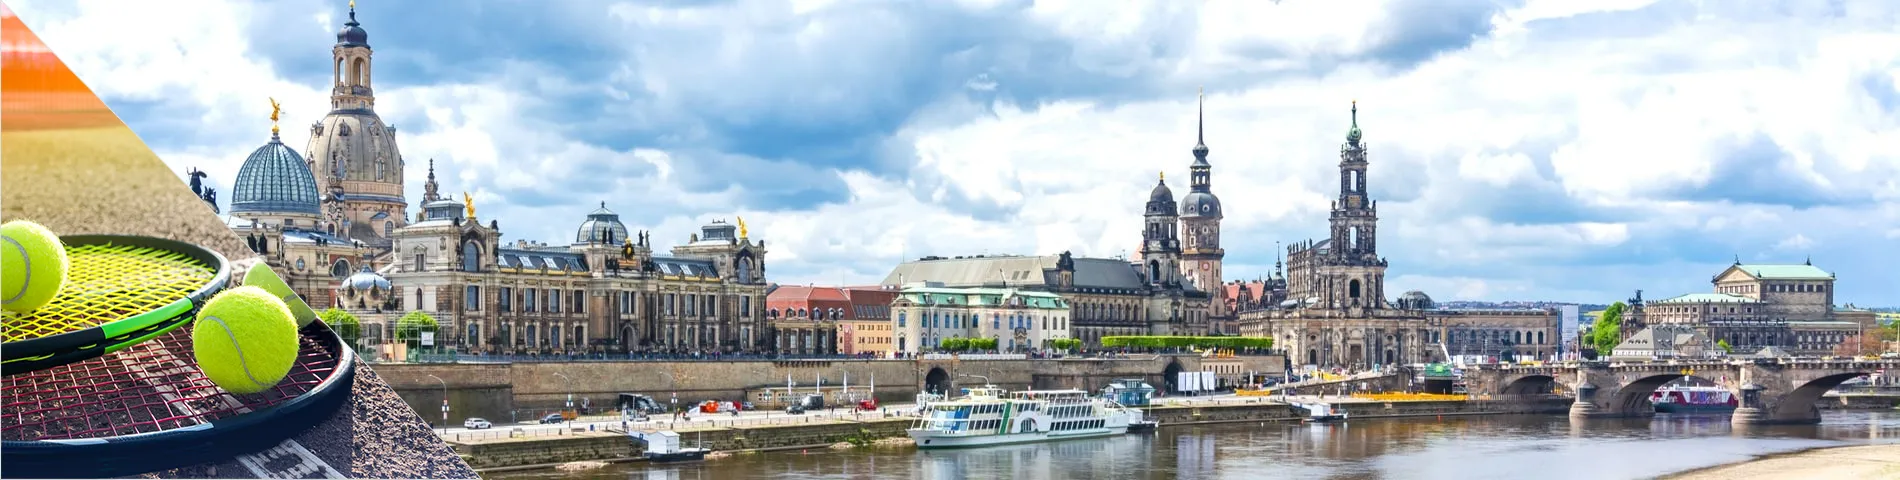 Dresden - Tyska & tennis